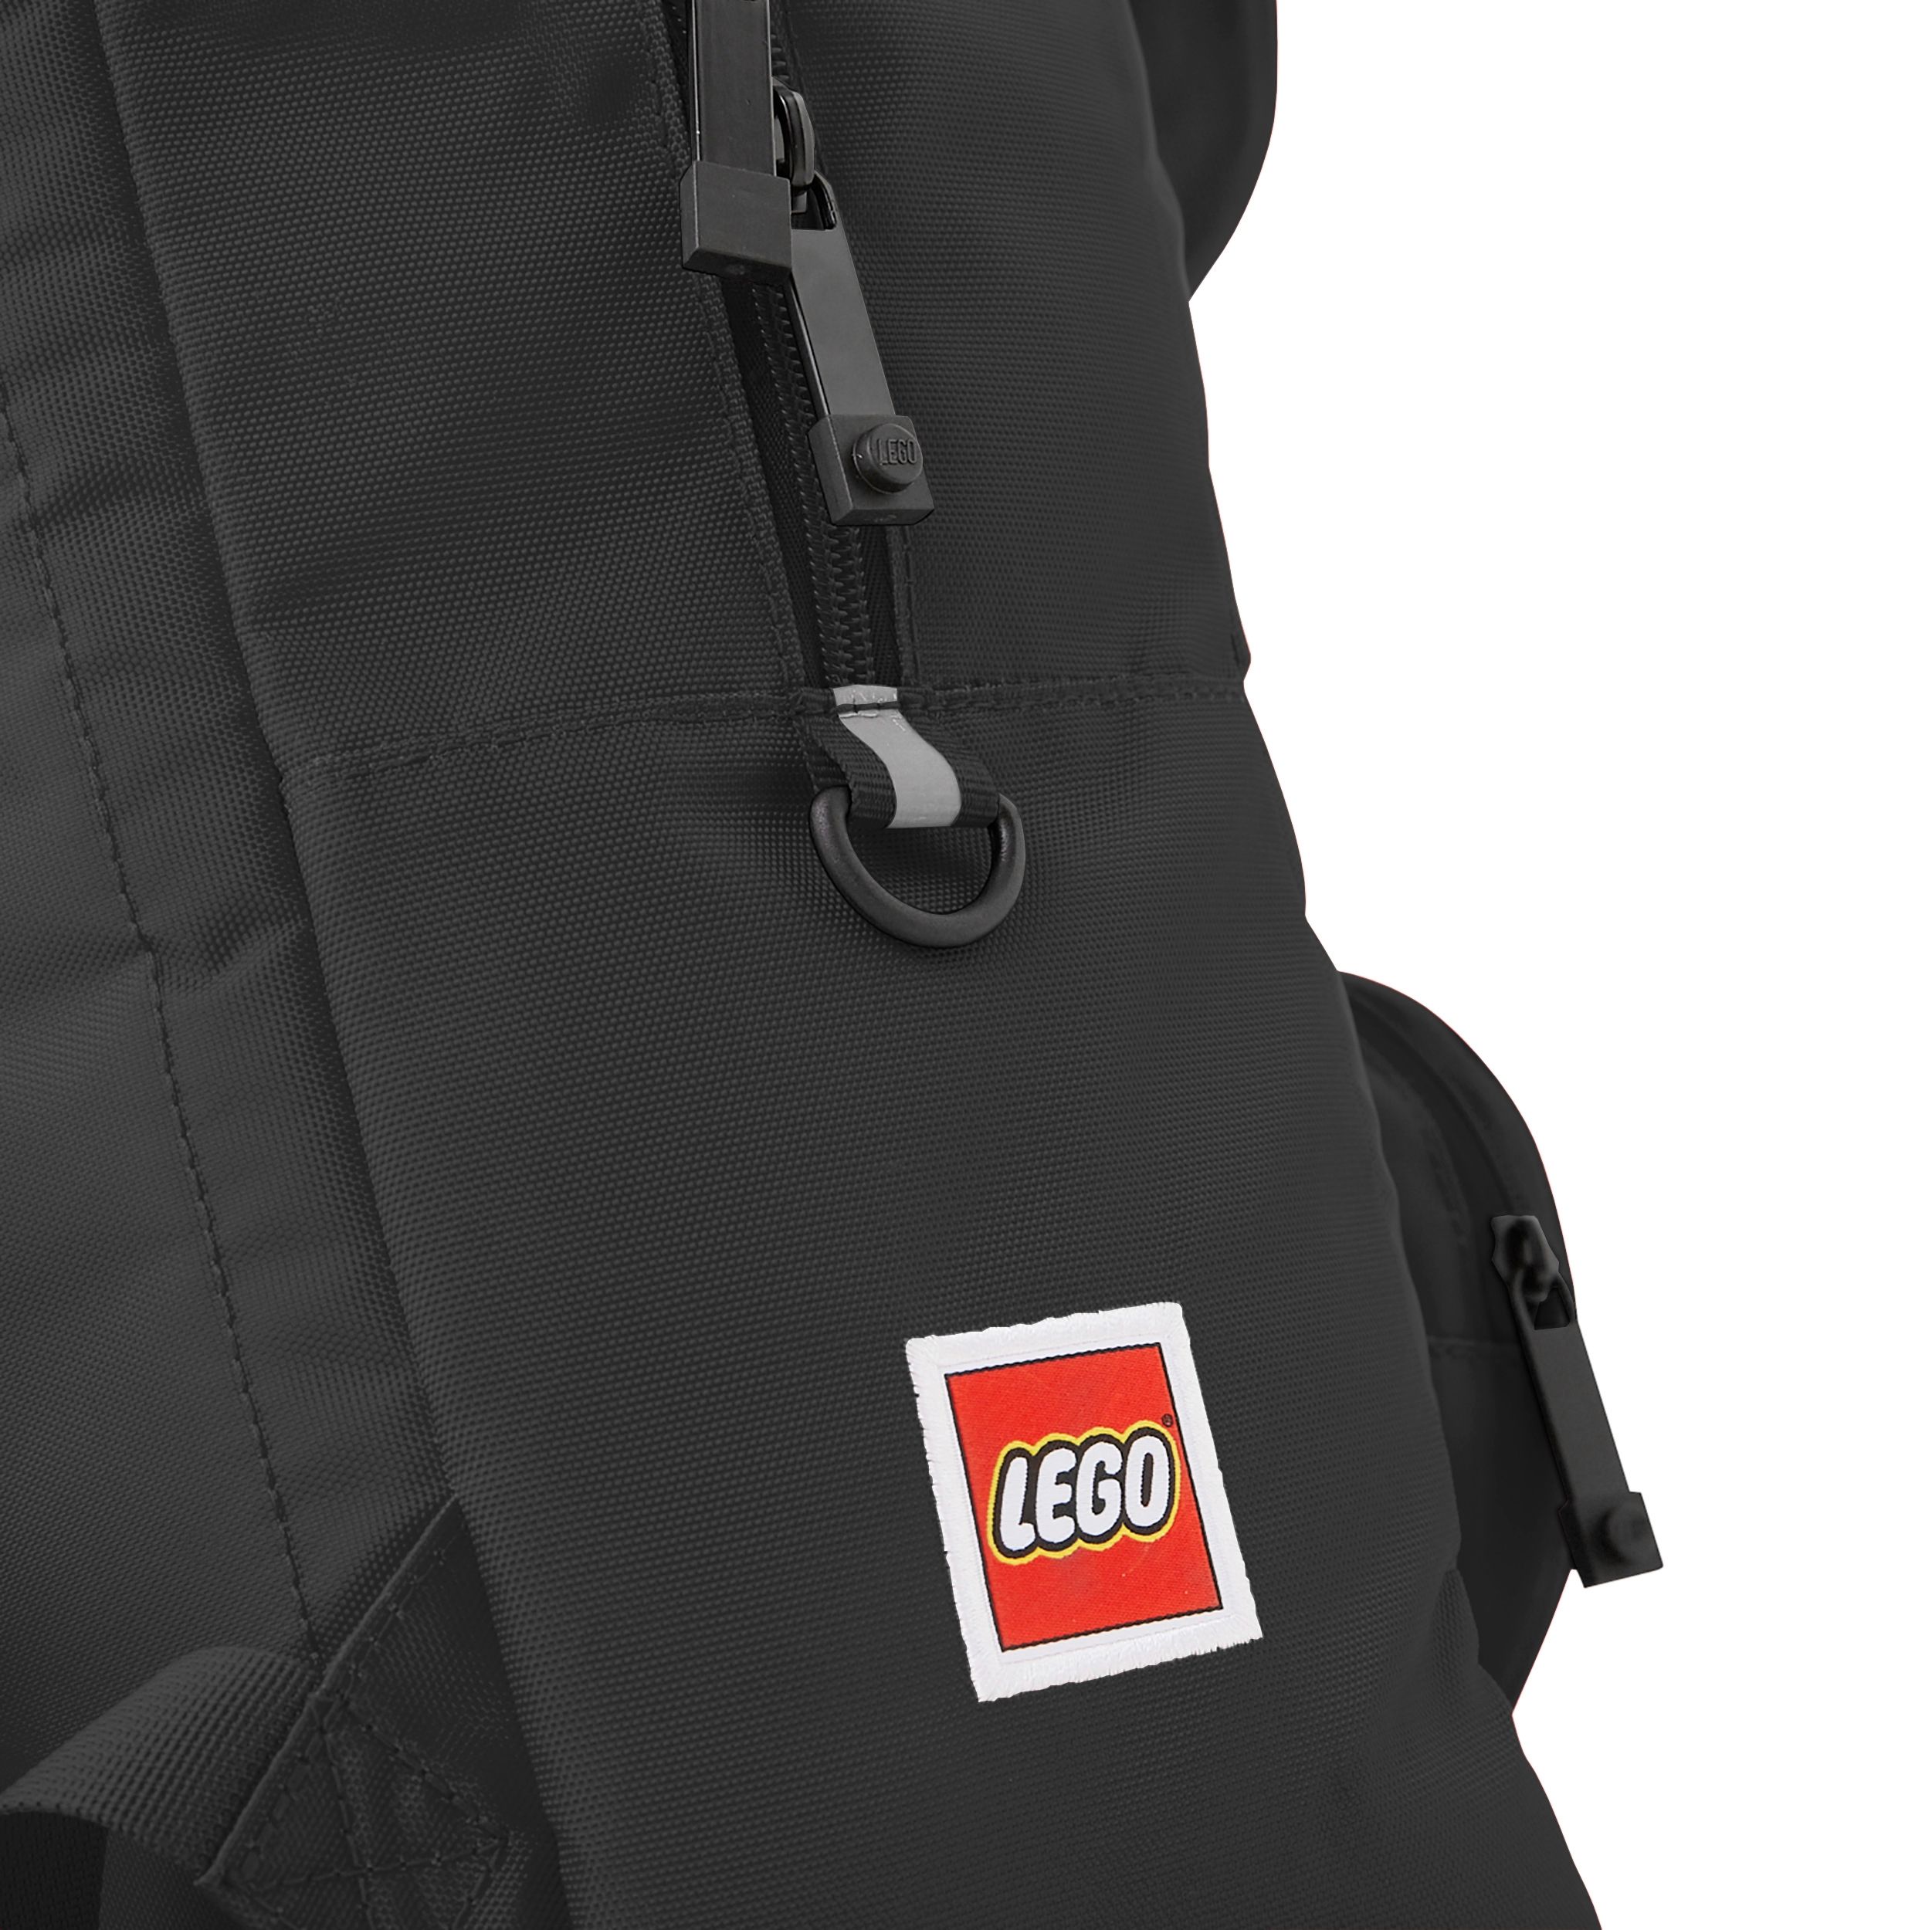 LEGO Gear 5007249 Brick 1x2 Backpack- Black LEGO_5007249_alt7.jpg